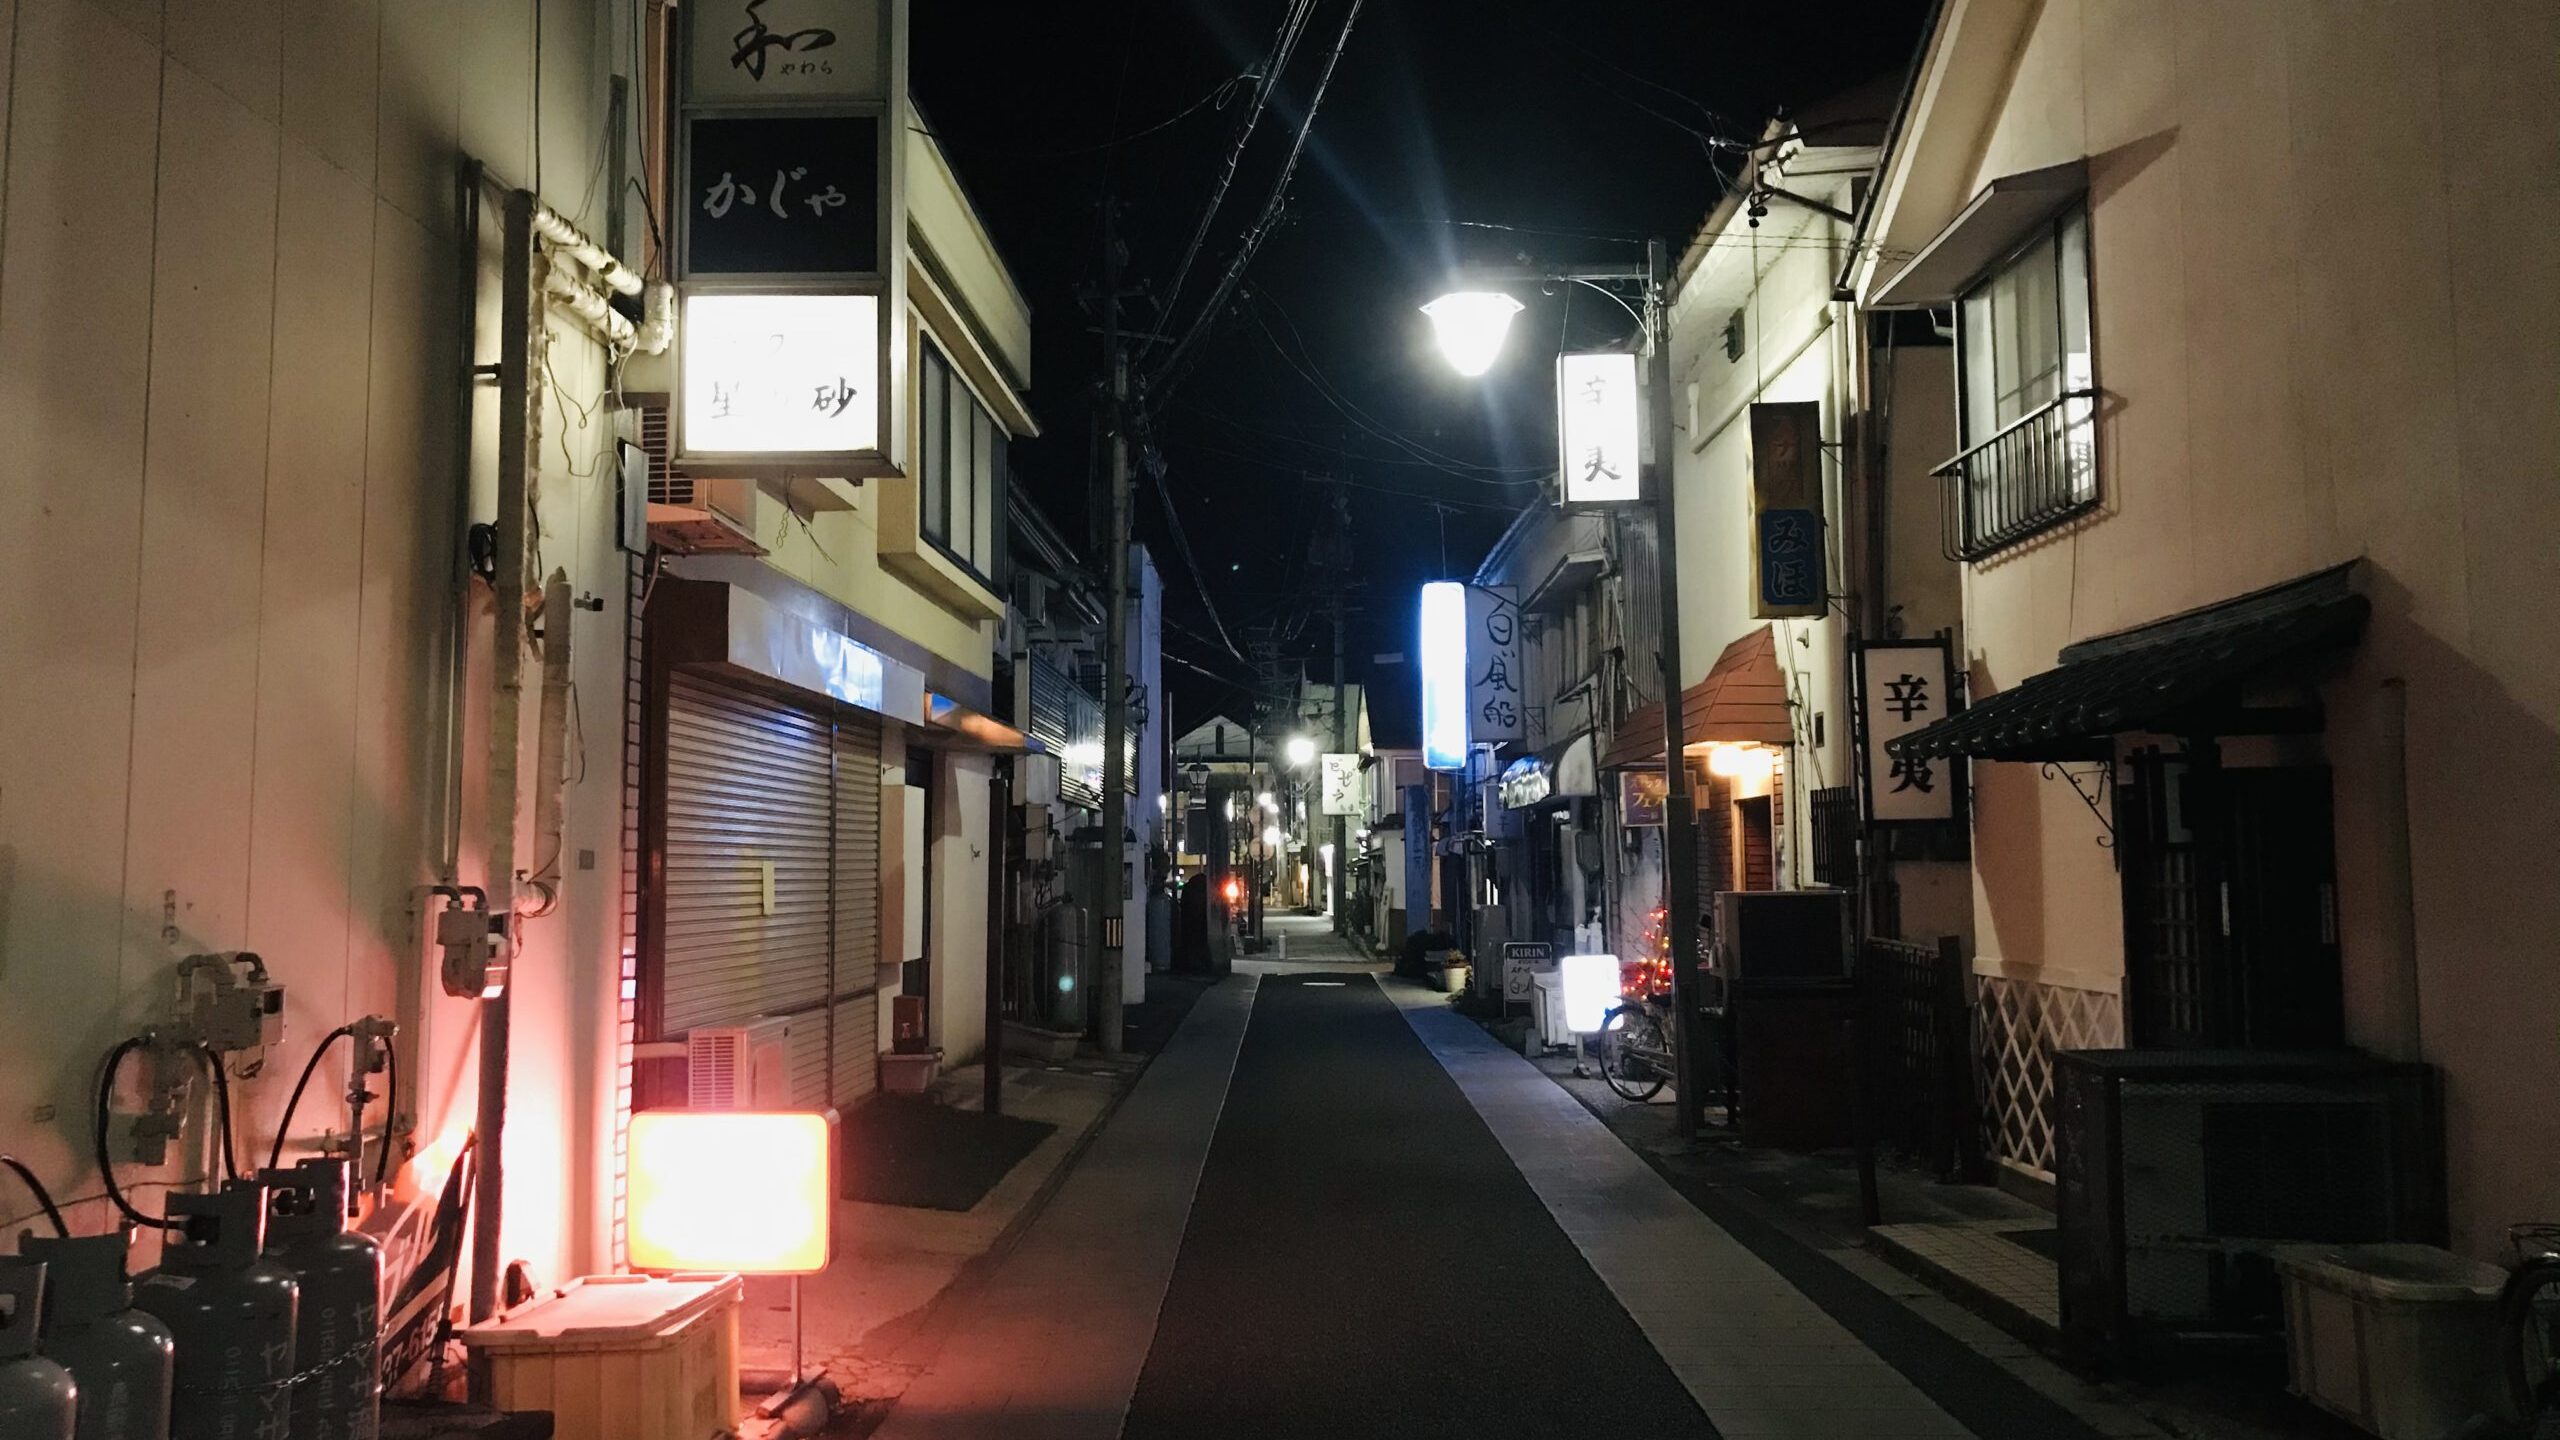 松本市裏町の夜の商店街を撮影した写真